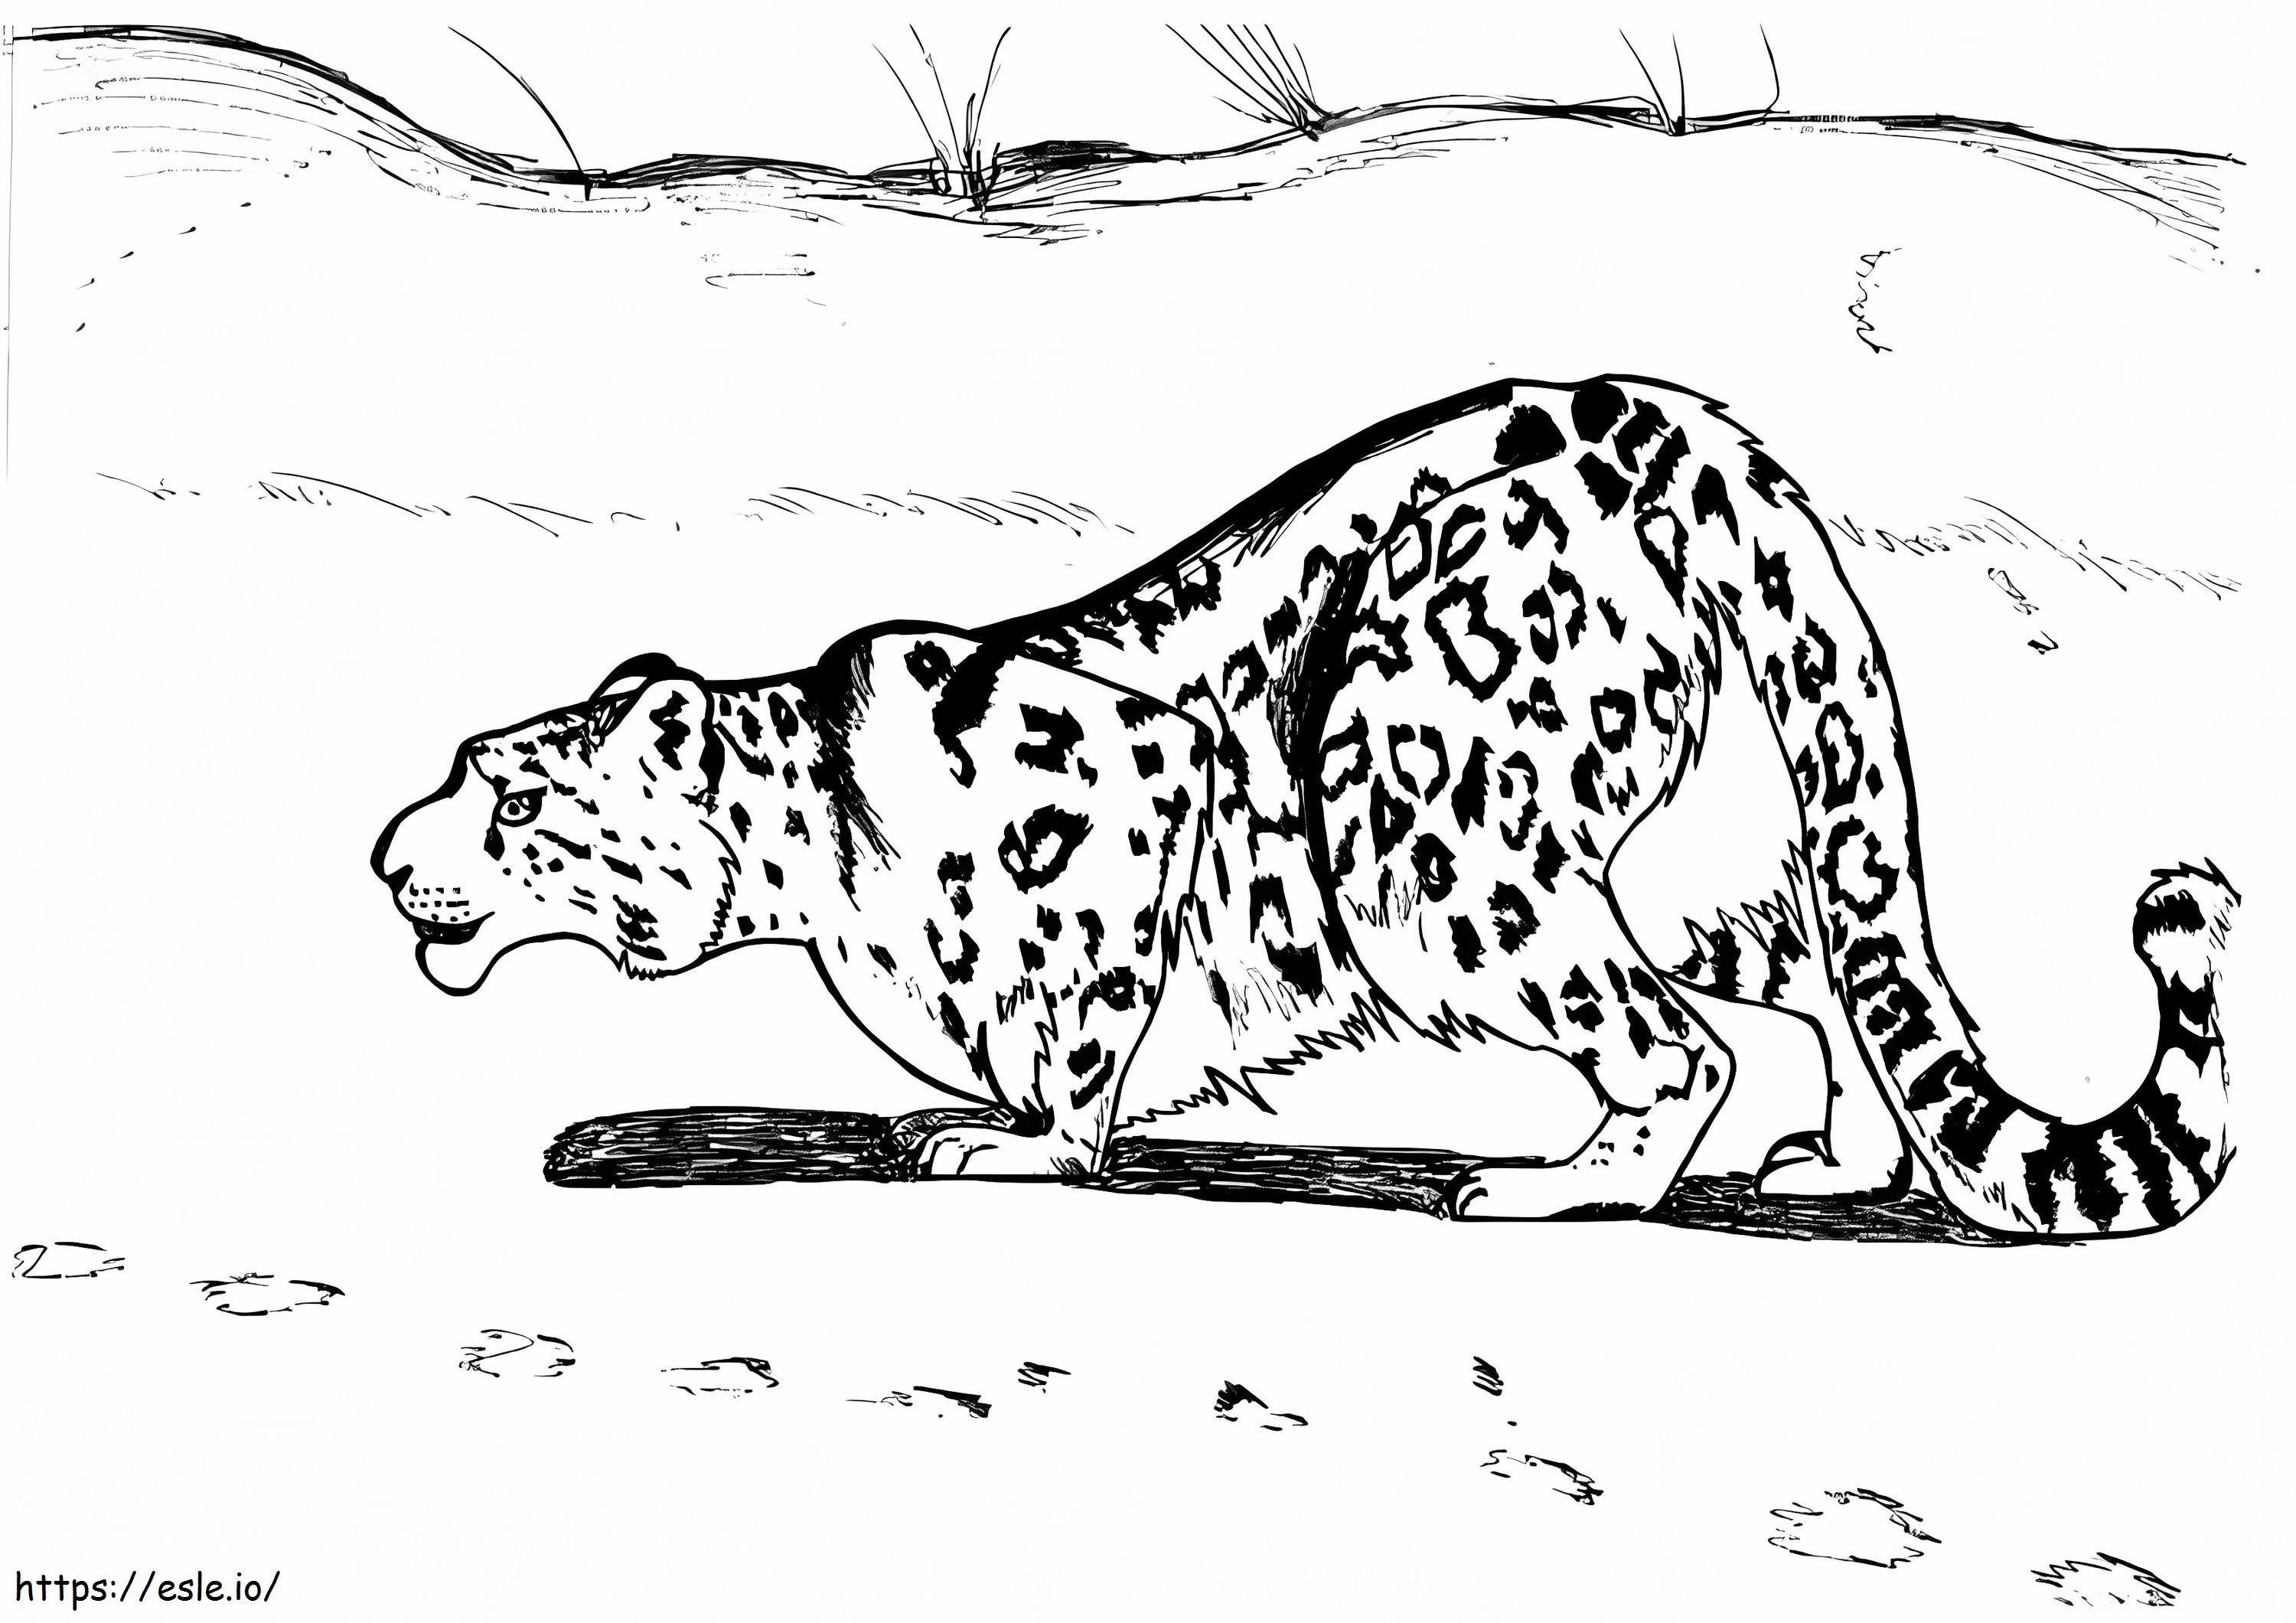 Caccia al leopardo delle nevi da colorare